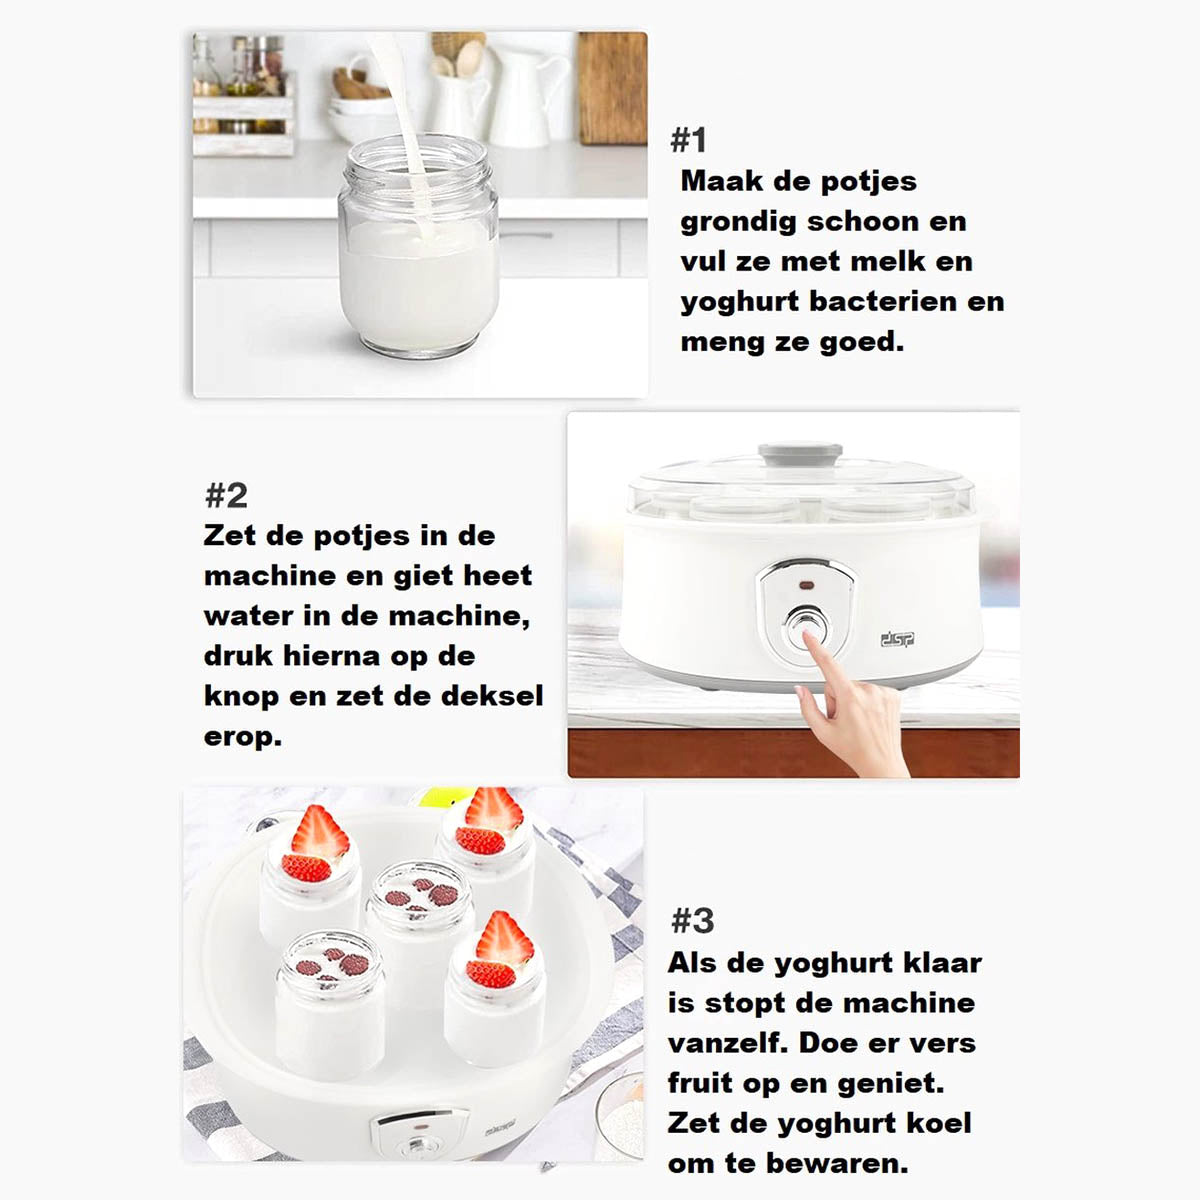 Ariko Yaourtière Elta - comprenant 7 tasses en verre (180 ml) avec couvercles - Température 42-50 degrés - Facile à nettoyer